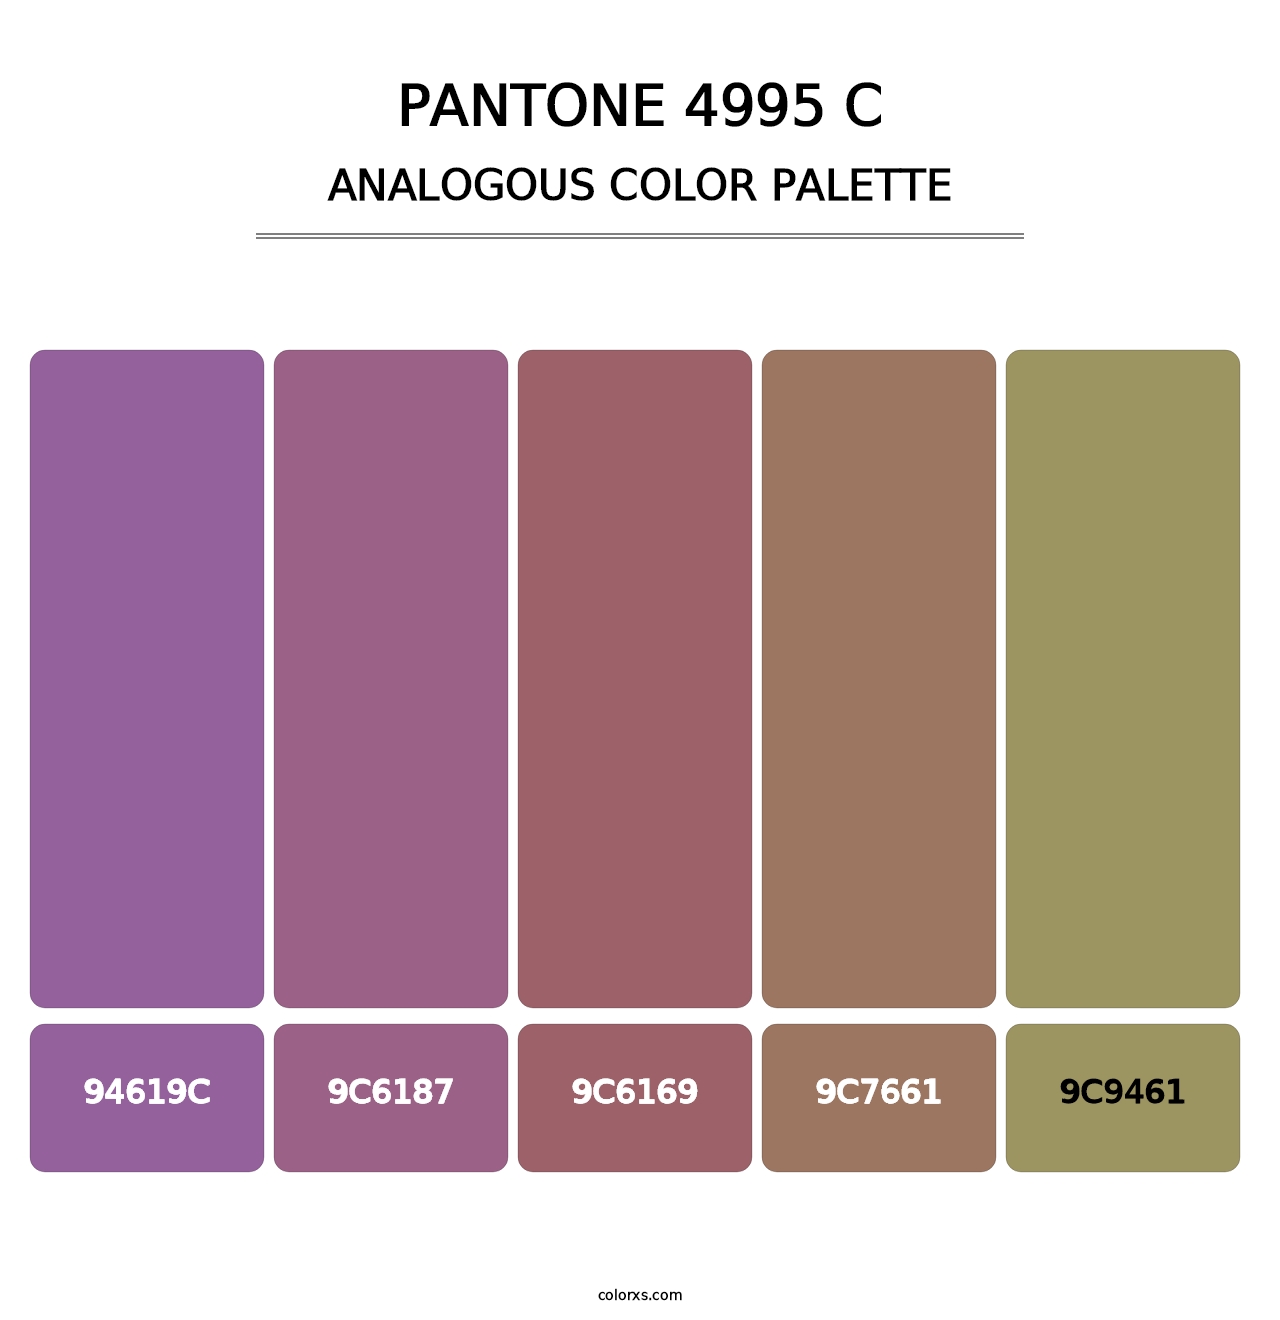 PANTONE 4995 C - Analogous Color Palette